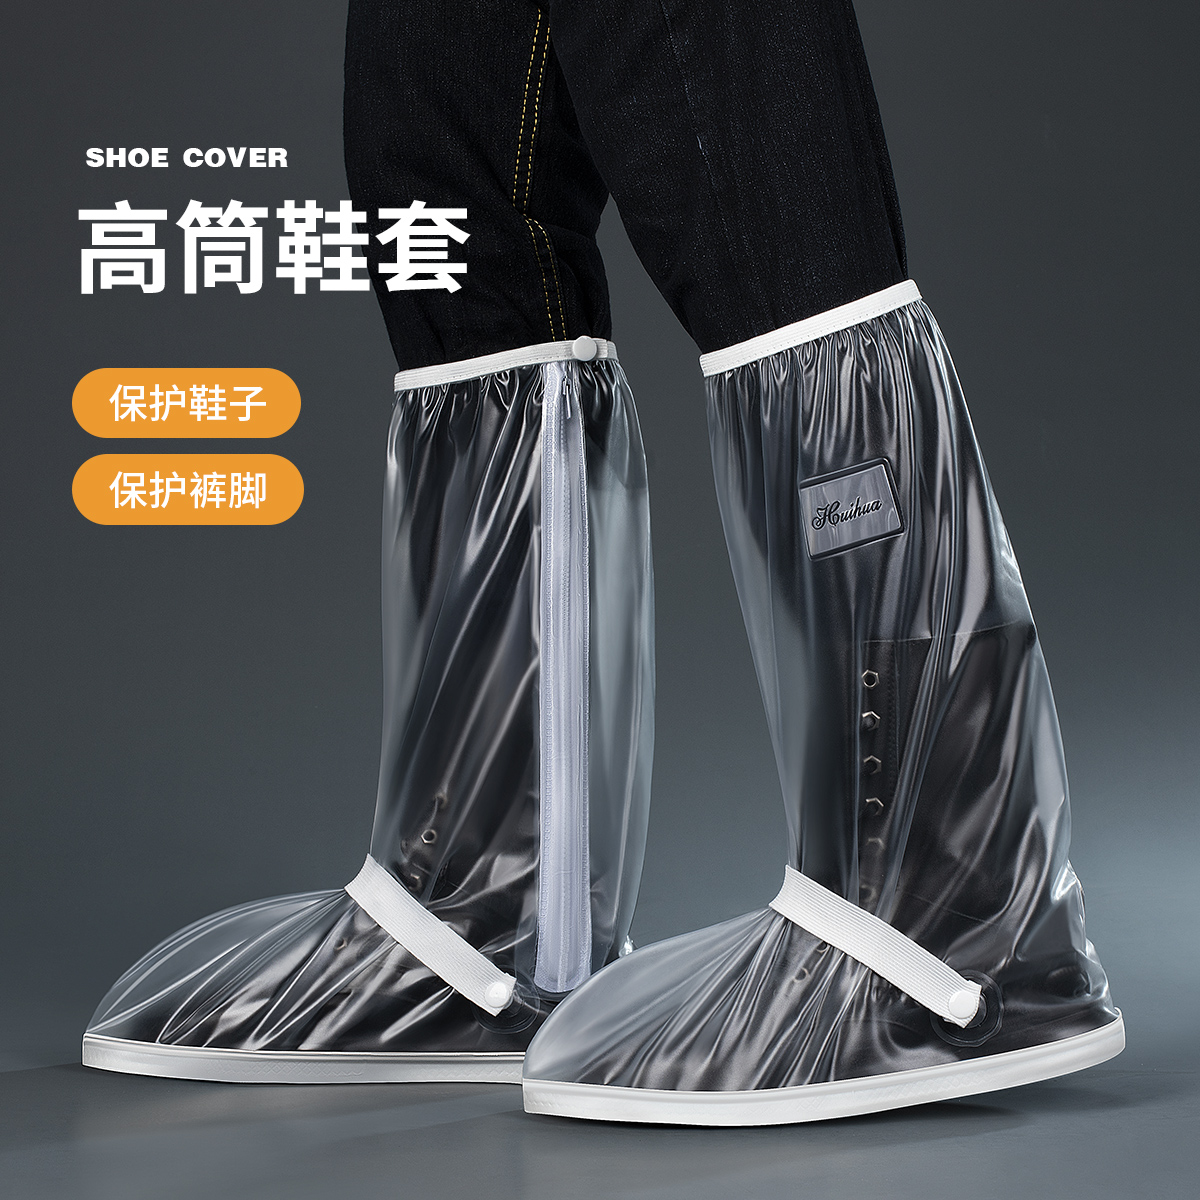 新品雨鞋套防水防滑男士防雨脚膜套硅胶水鞋加厚耐磨雨天雨靴鞋套